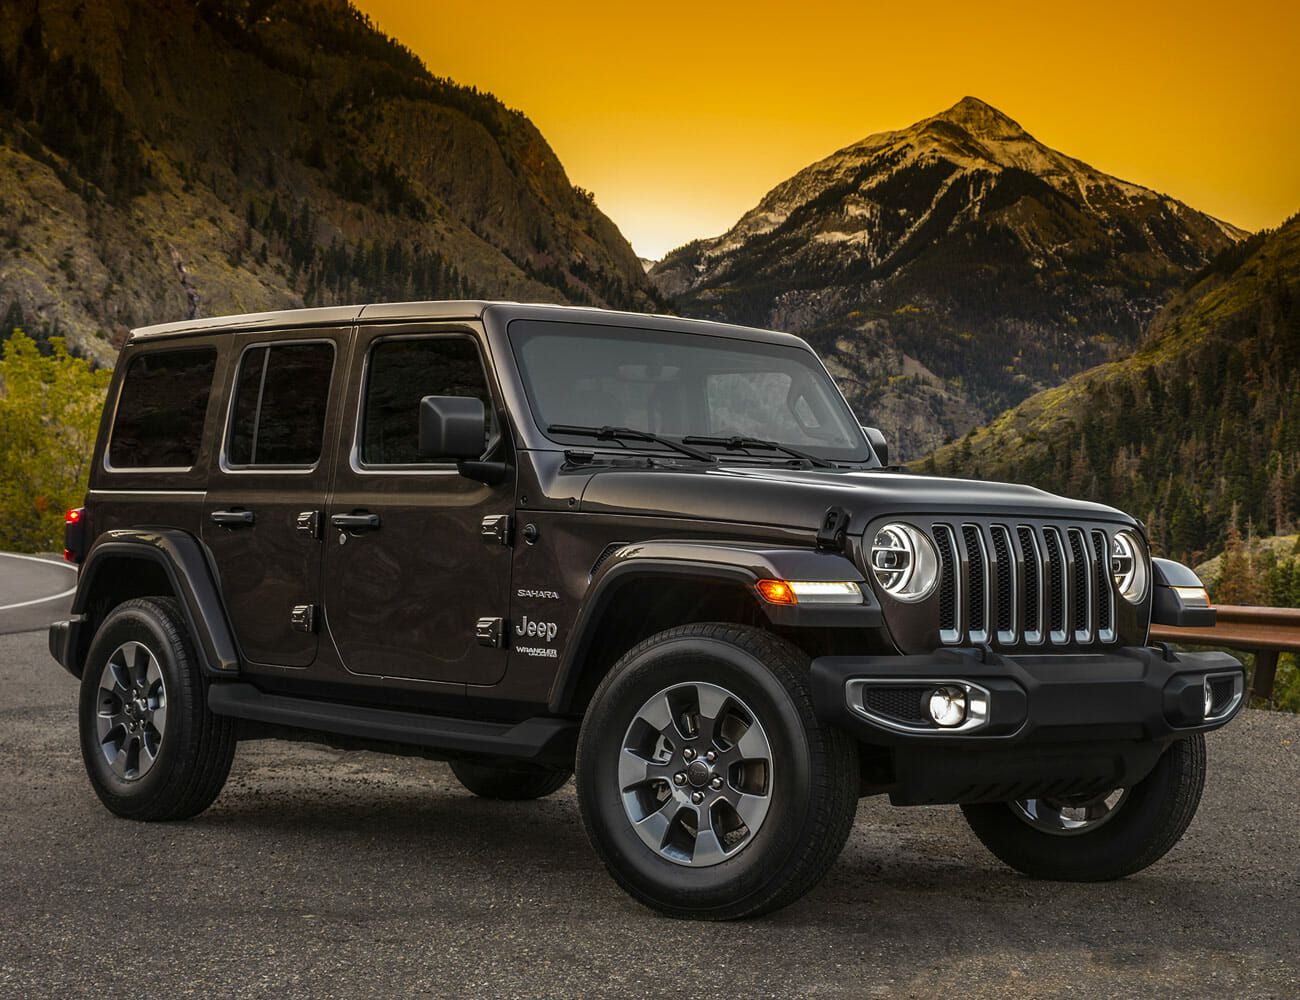 Actualizar 72+ imagen best jeep wrangler model to buy